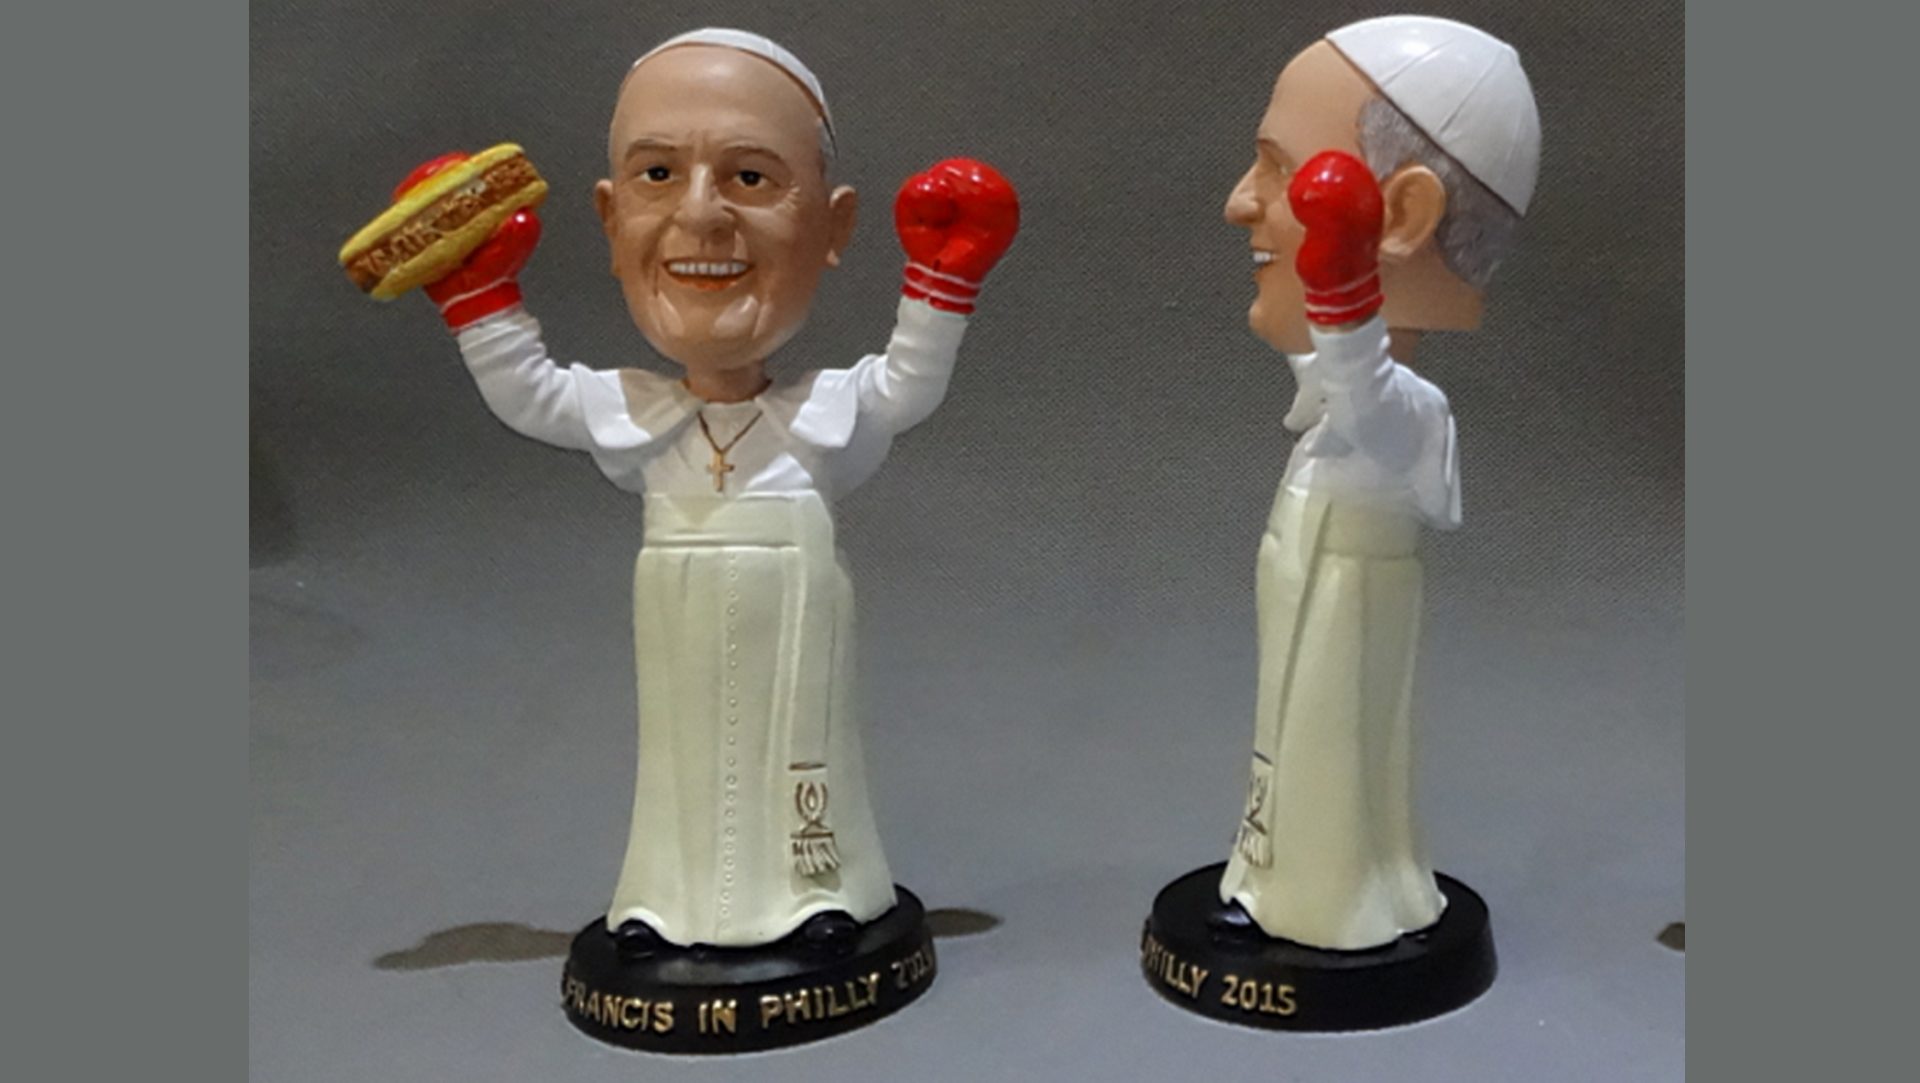 Le merchandising autour du pape François s'est déchaîné aux Philippines (photo DR)